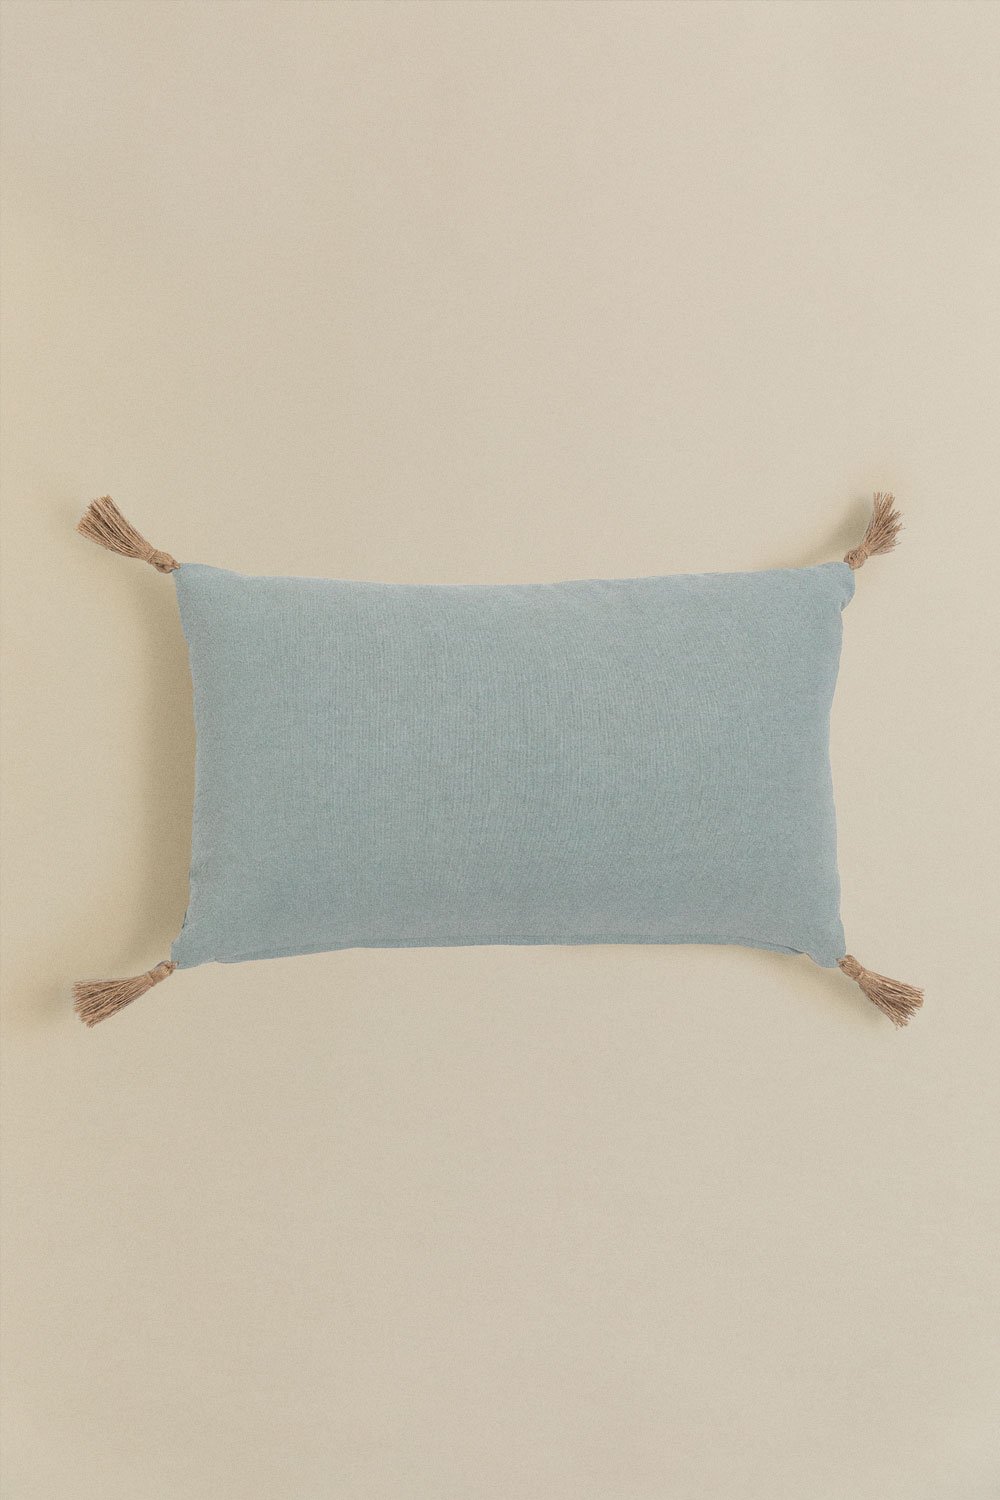 Cuscino rettangolare in cotone (30x50 cm) Lavras, immagine della galleria 1